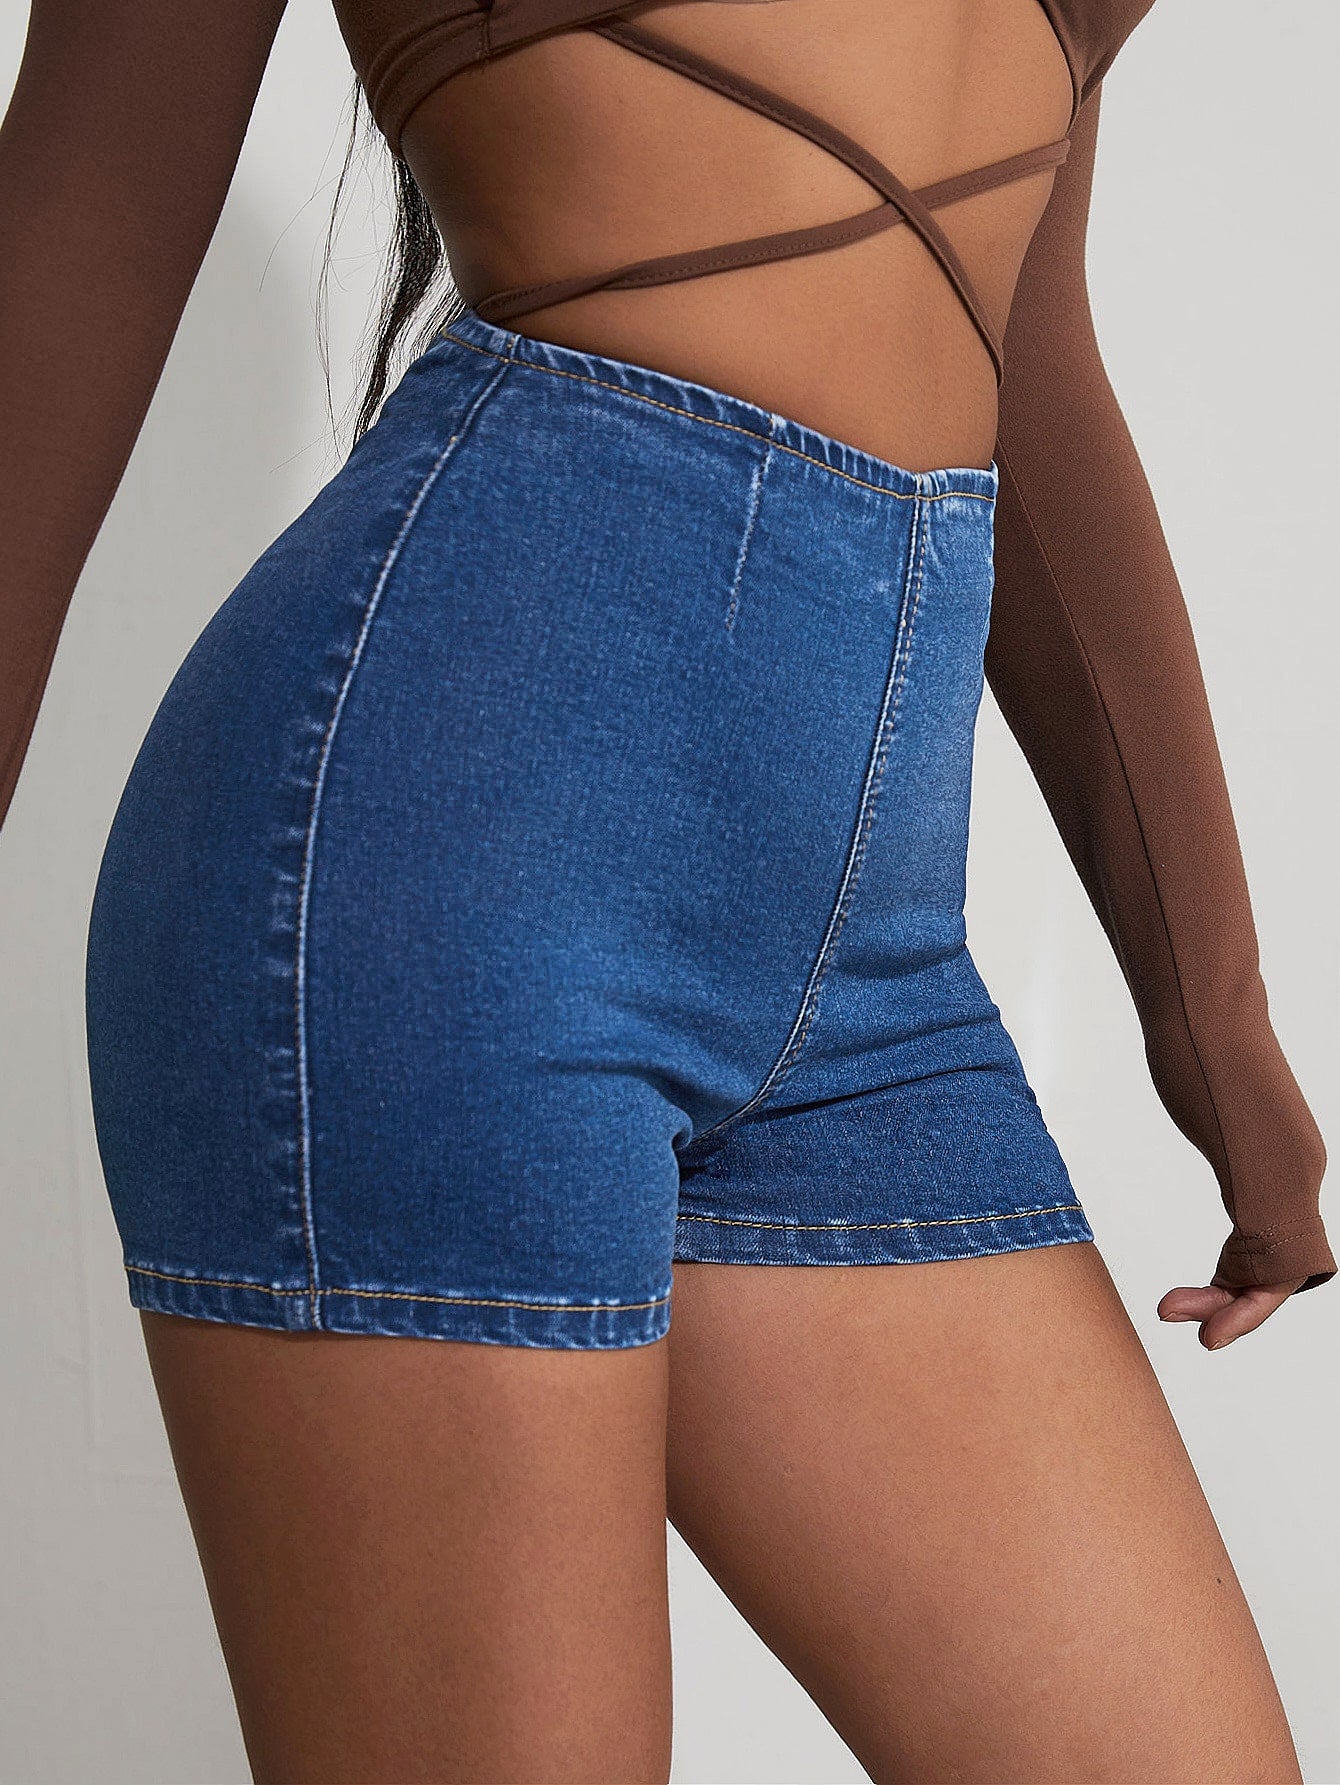 Women Denim Shorts Supplier